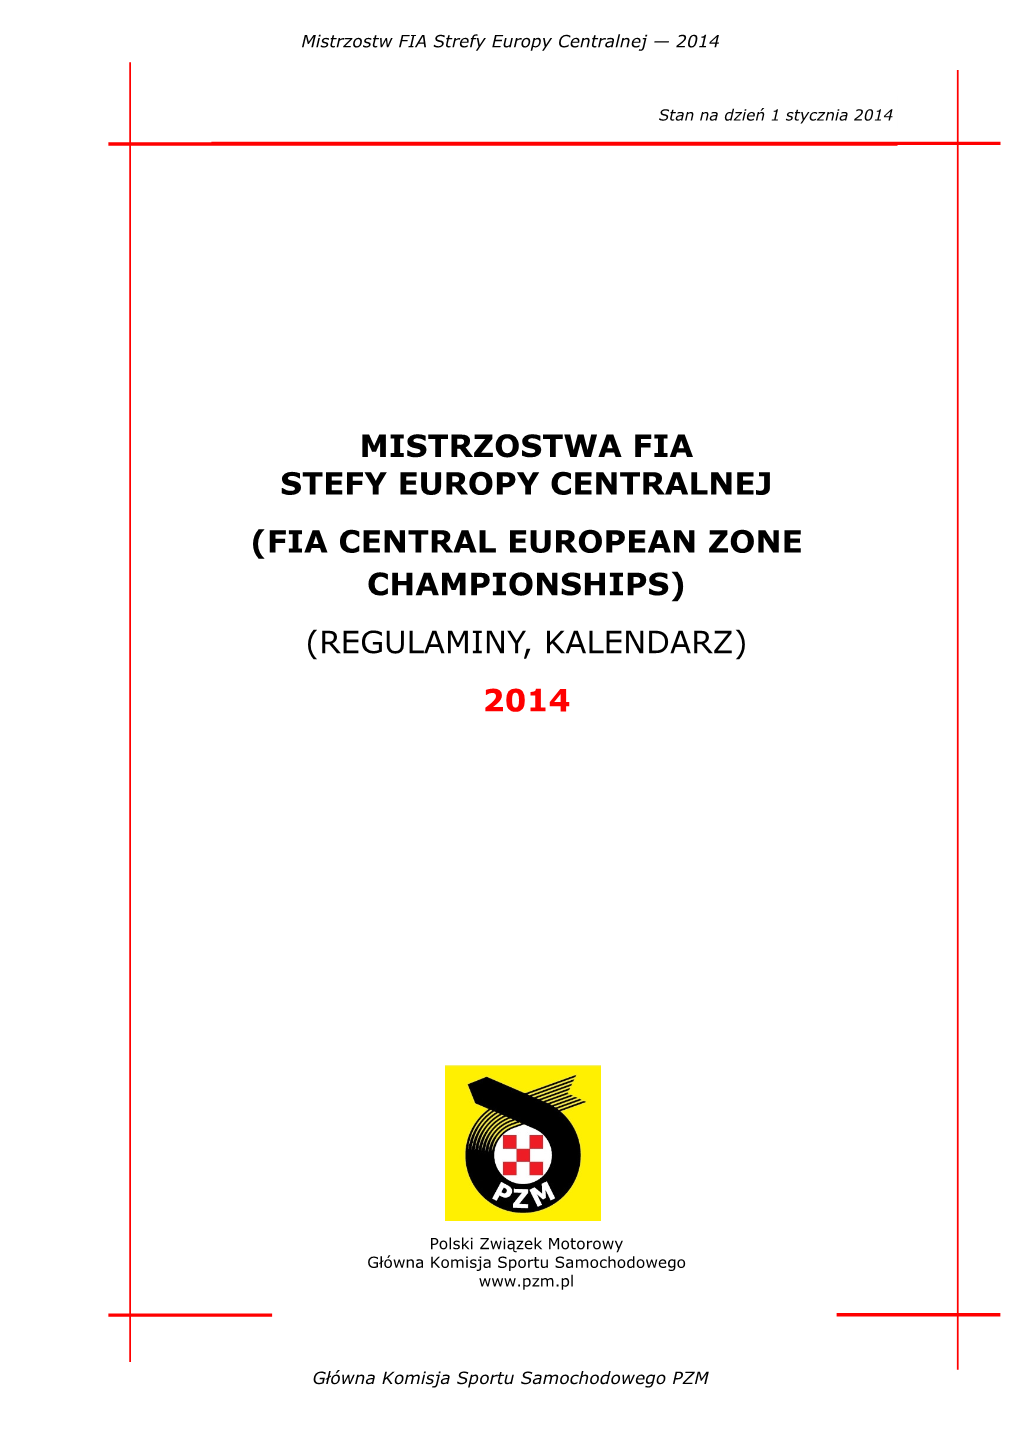 Mistrzostwa Fia Stefy Europy Centralnej (Fia Central European Zone Championships) (Regulaminy, Kalendarz) 2014